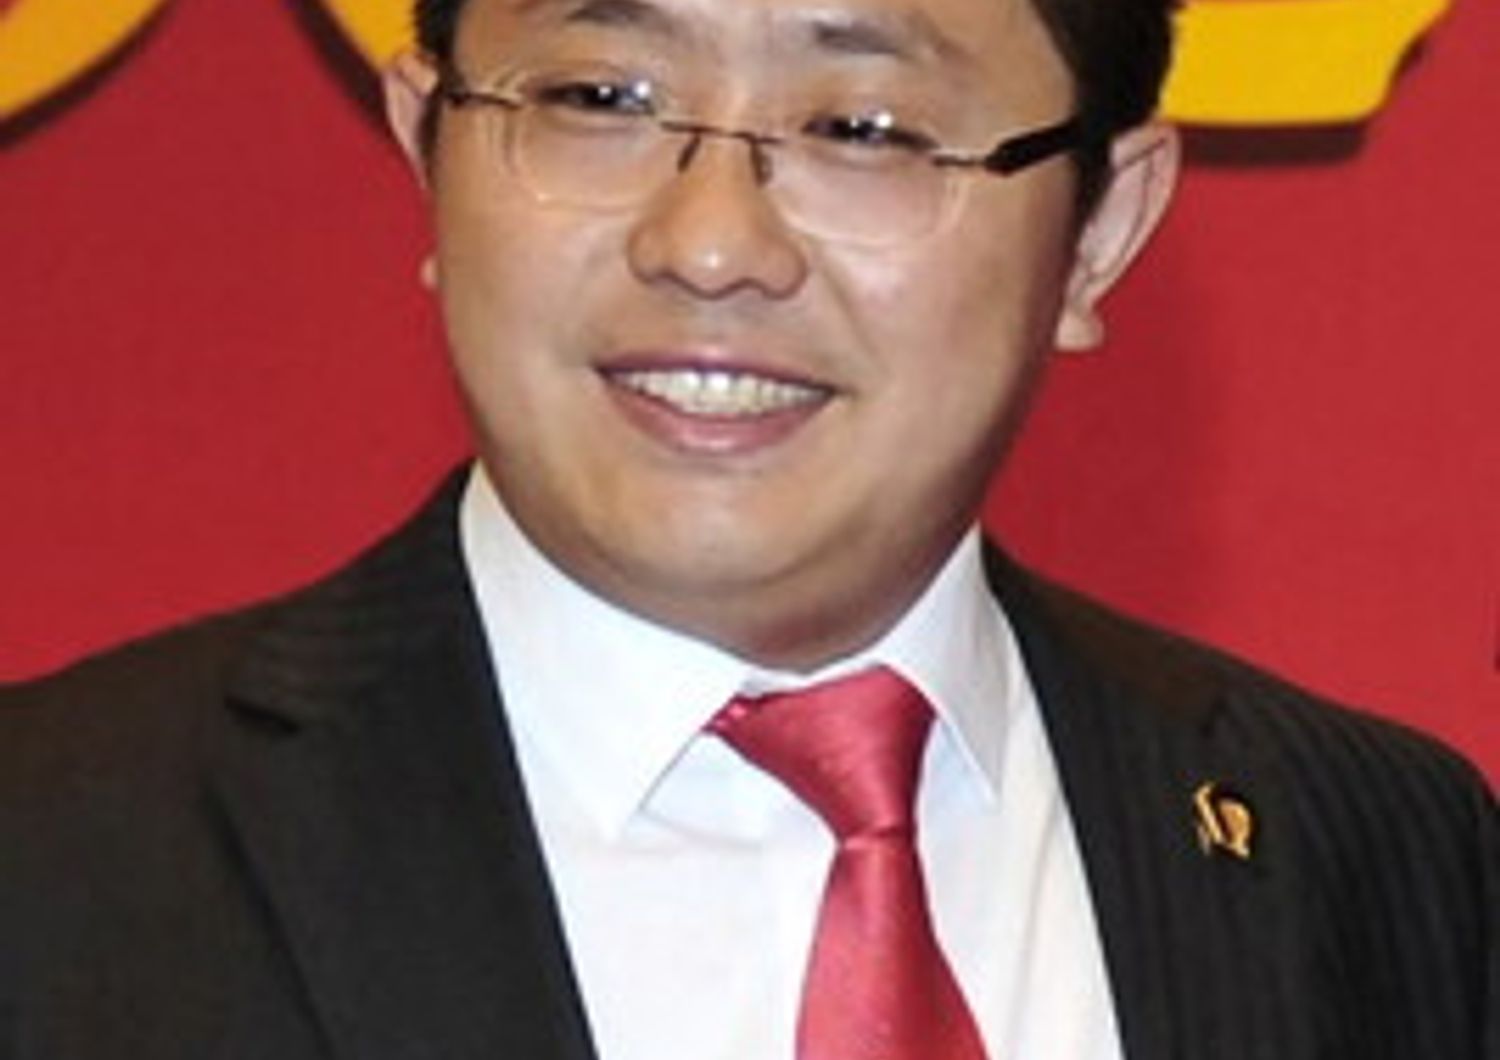 Liu Yongzhuo